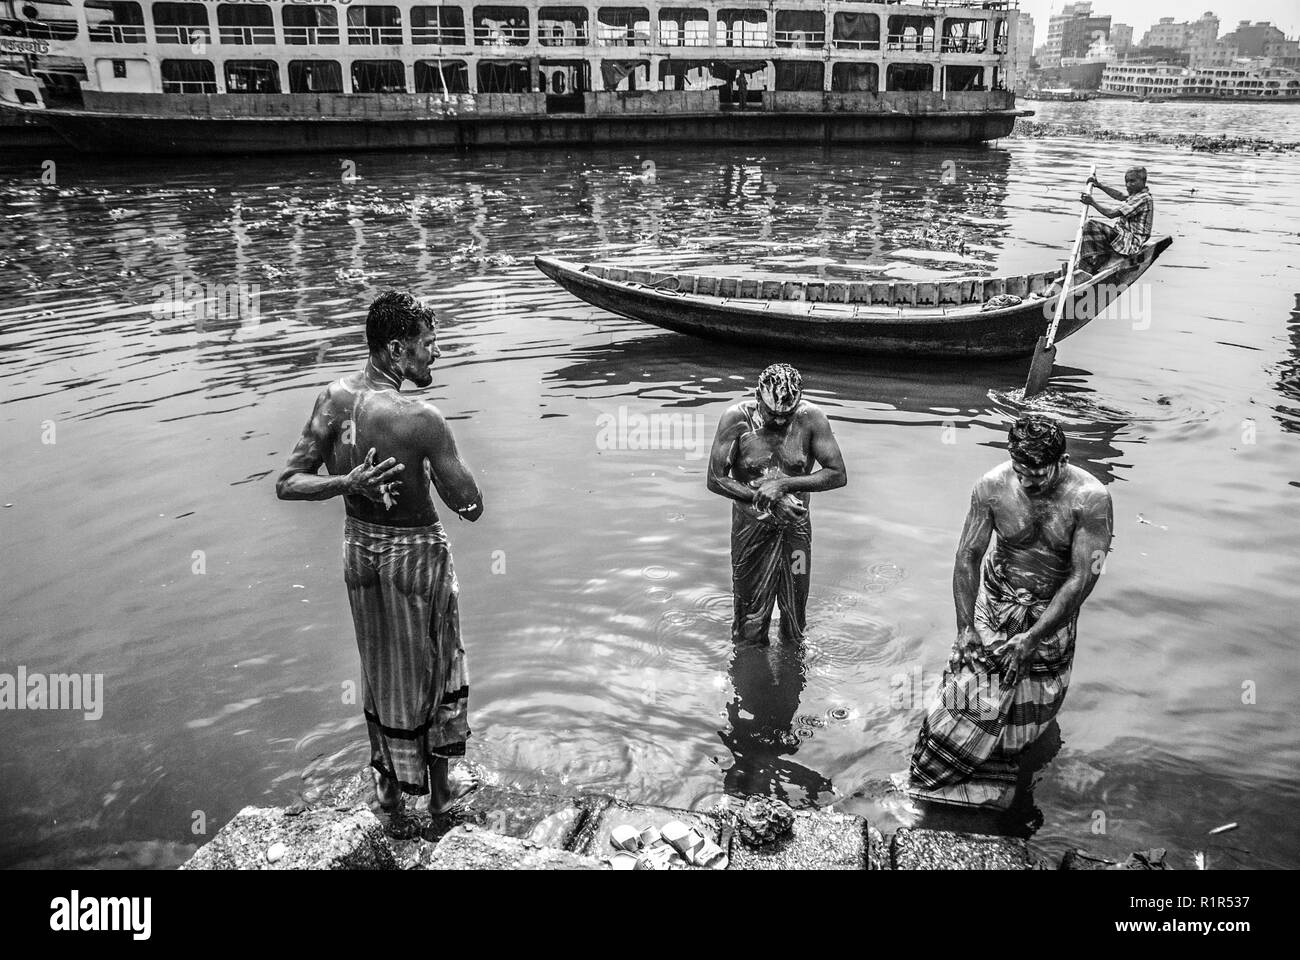 02/2018 dhaka Bangladesch,Einkommensschwache baden in verschmutztem Wasser © Nazmul Islam/Alamy Live News Stockfoto